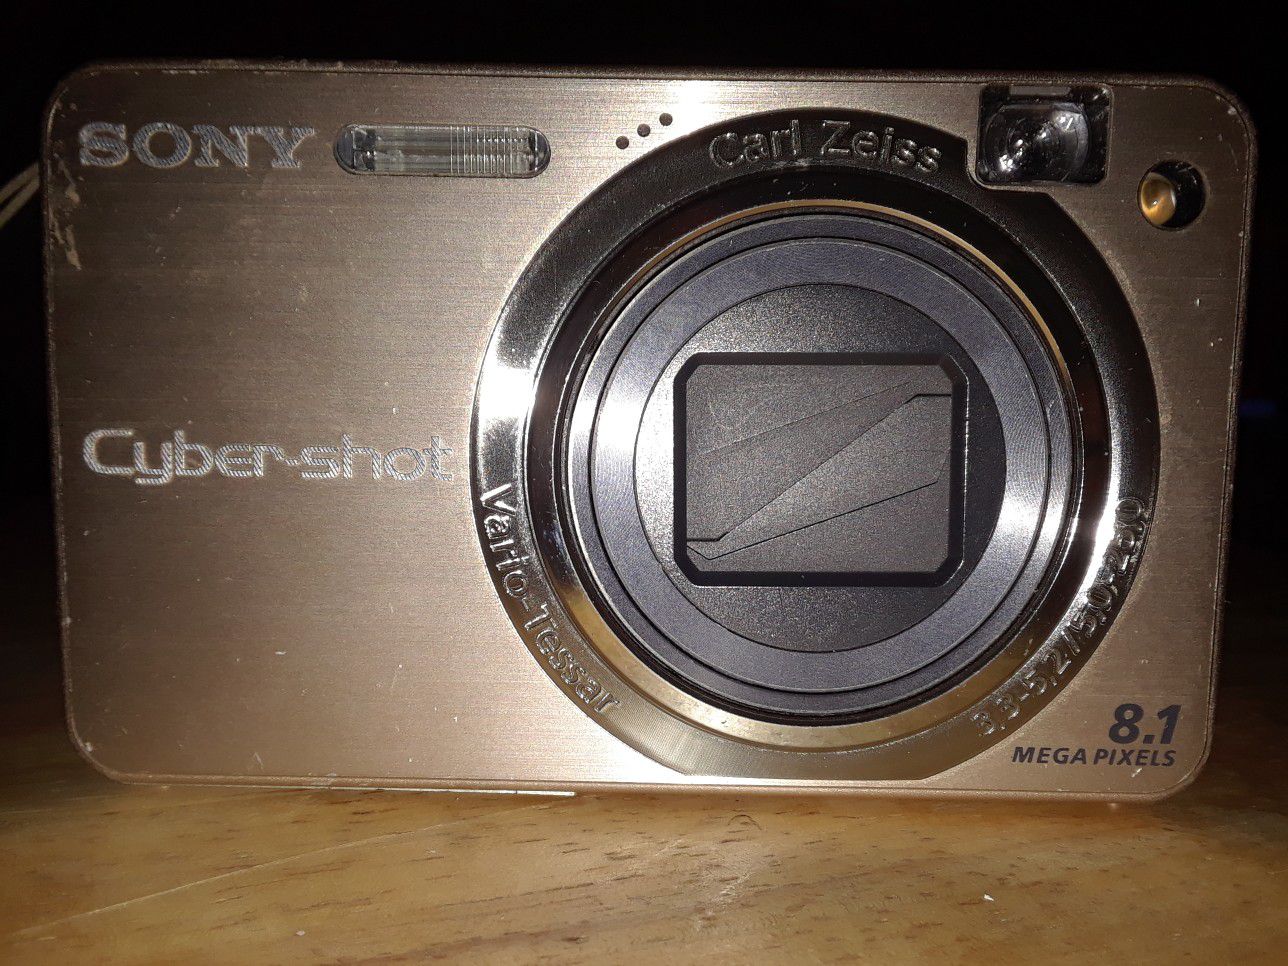 Sony Cybershot DSC-W150 8MP Digital Camera